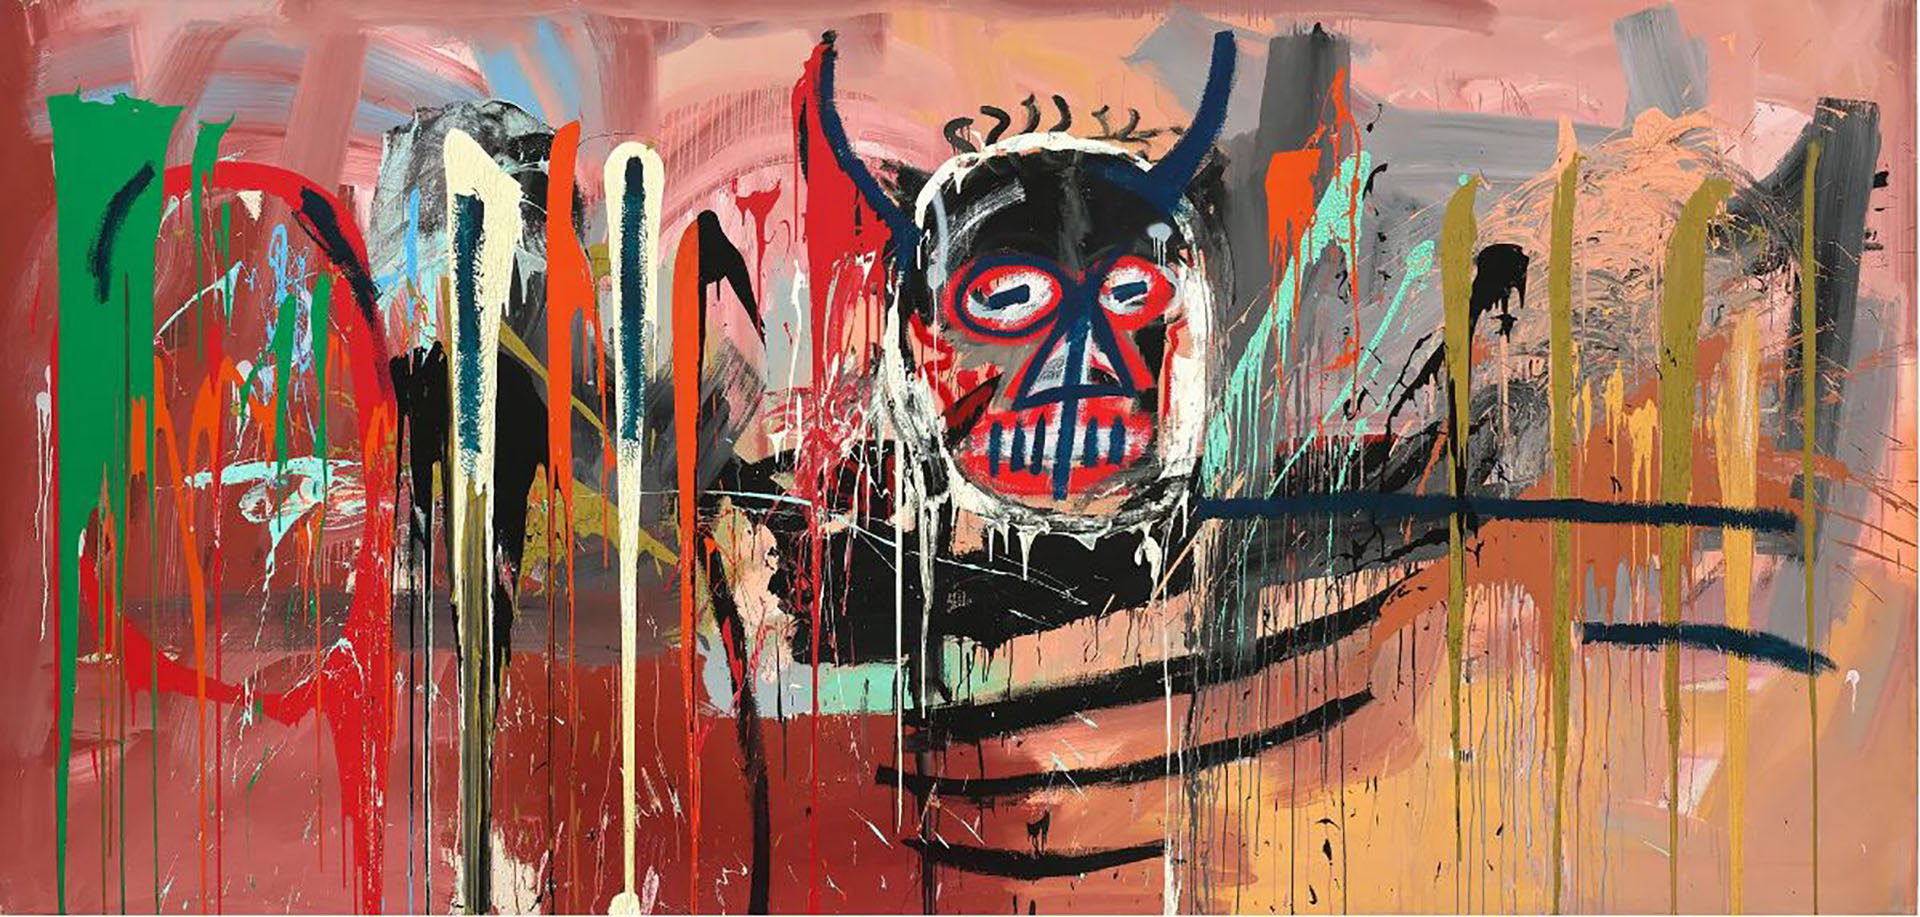 Una obra de Jean-Michel Basquiat se vendió por USD 85 millones, pero quedó lejos de lo esperado  